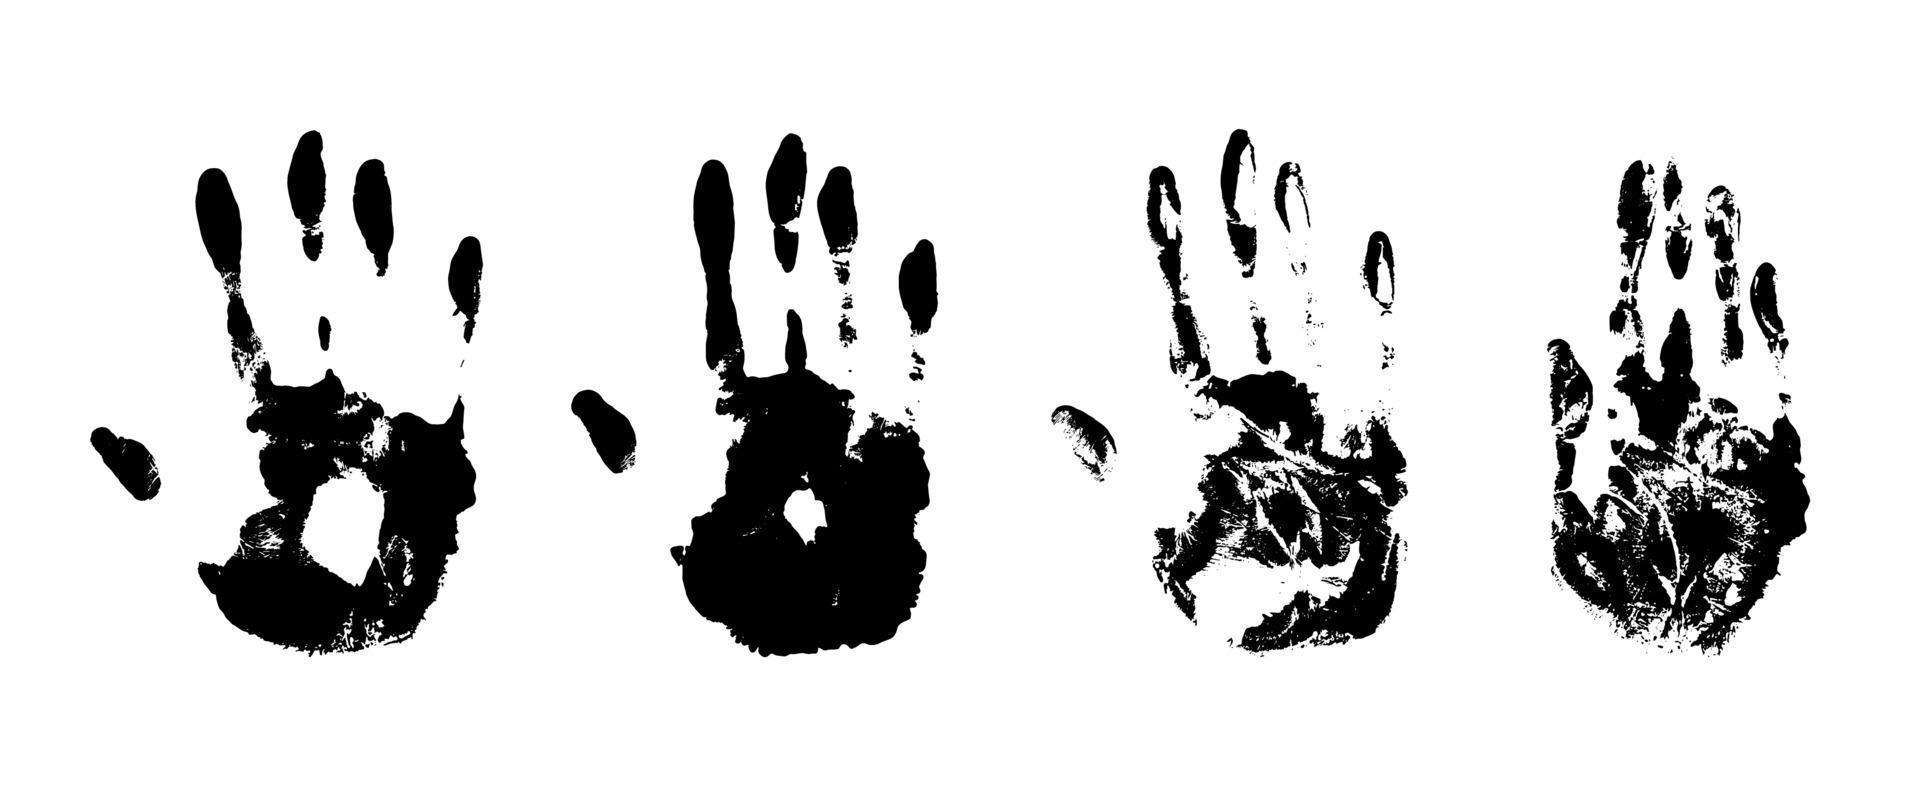 conjunto de impresión de mano. silueta de huella humana. Ilustración de vector de textura grunge